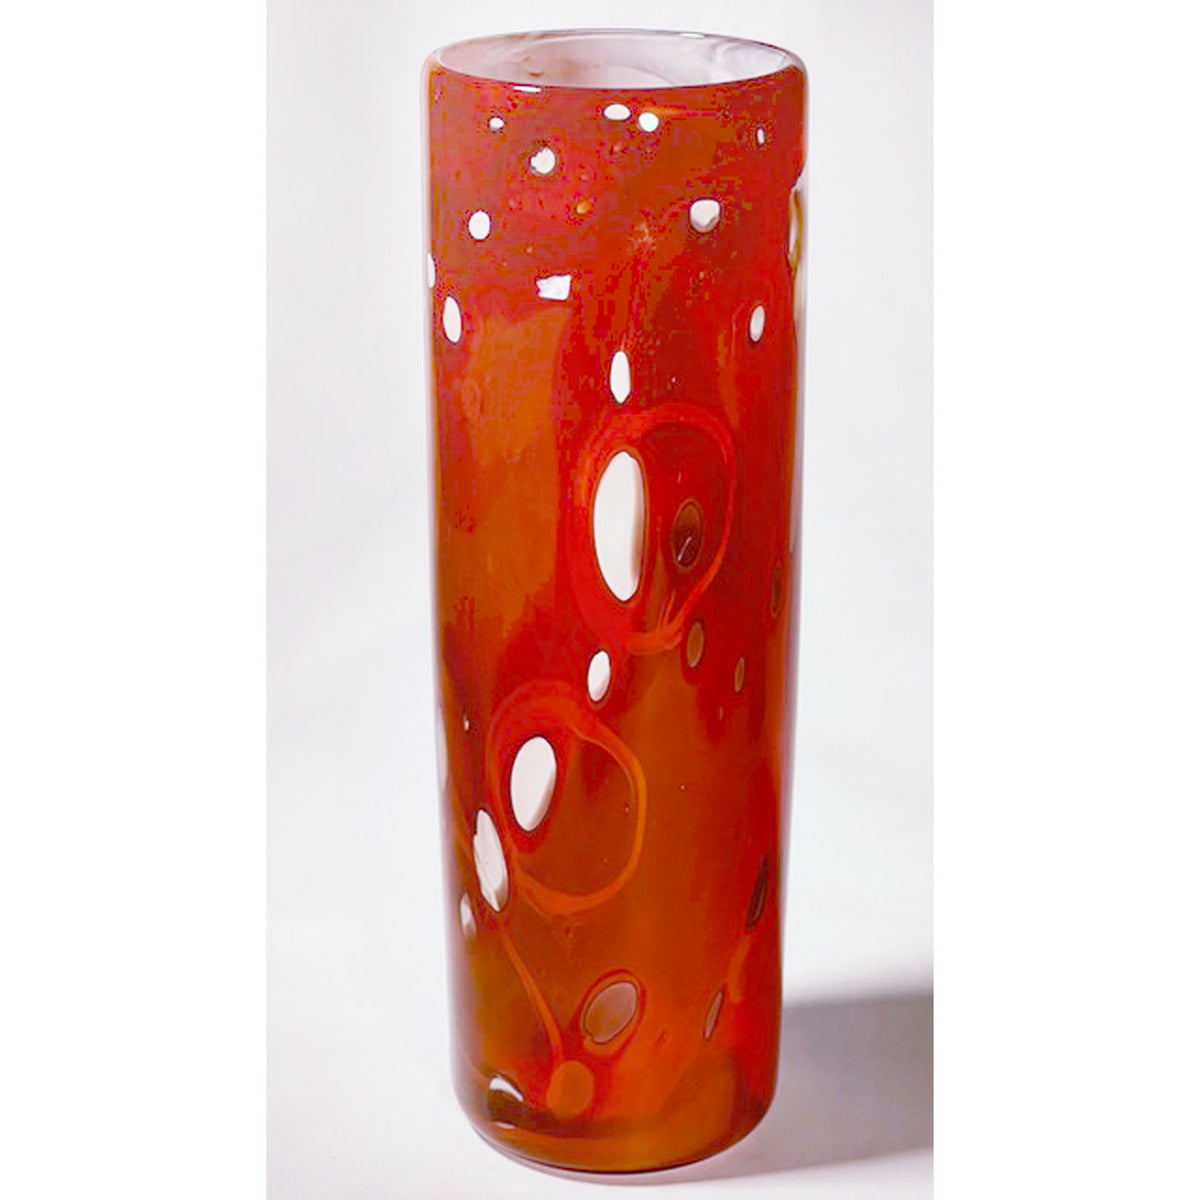 Sue Rankin - Lg Red Cylinder Vase, 9.5" x 3" x 3"